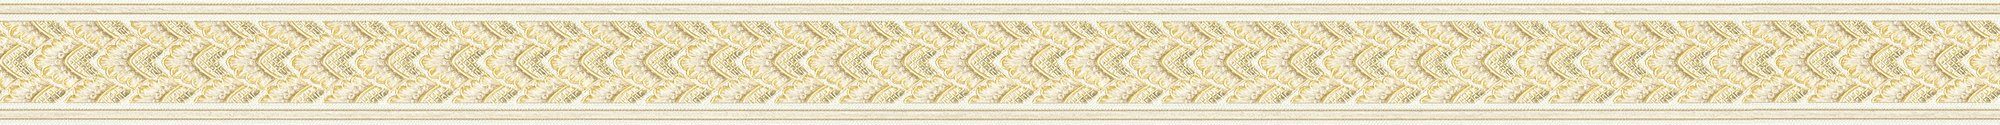 Bordüre Borders, Barock, Klassisch Création A.S. Only creme/beige Bordüre Vliestapete strukturiert,